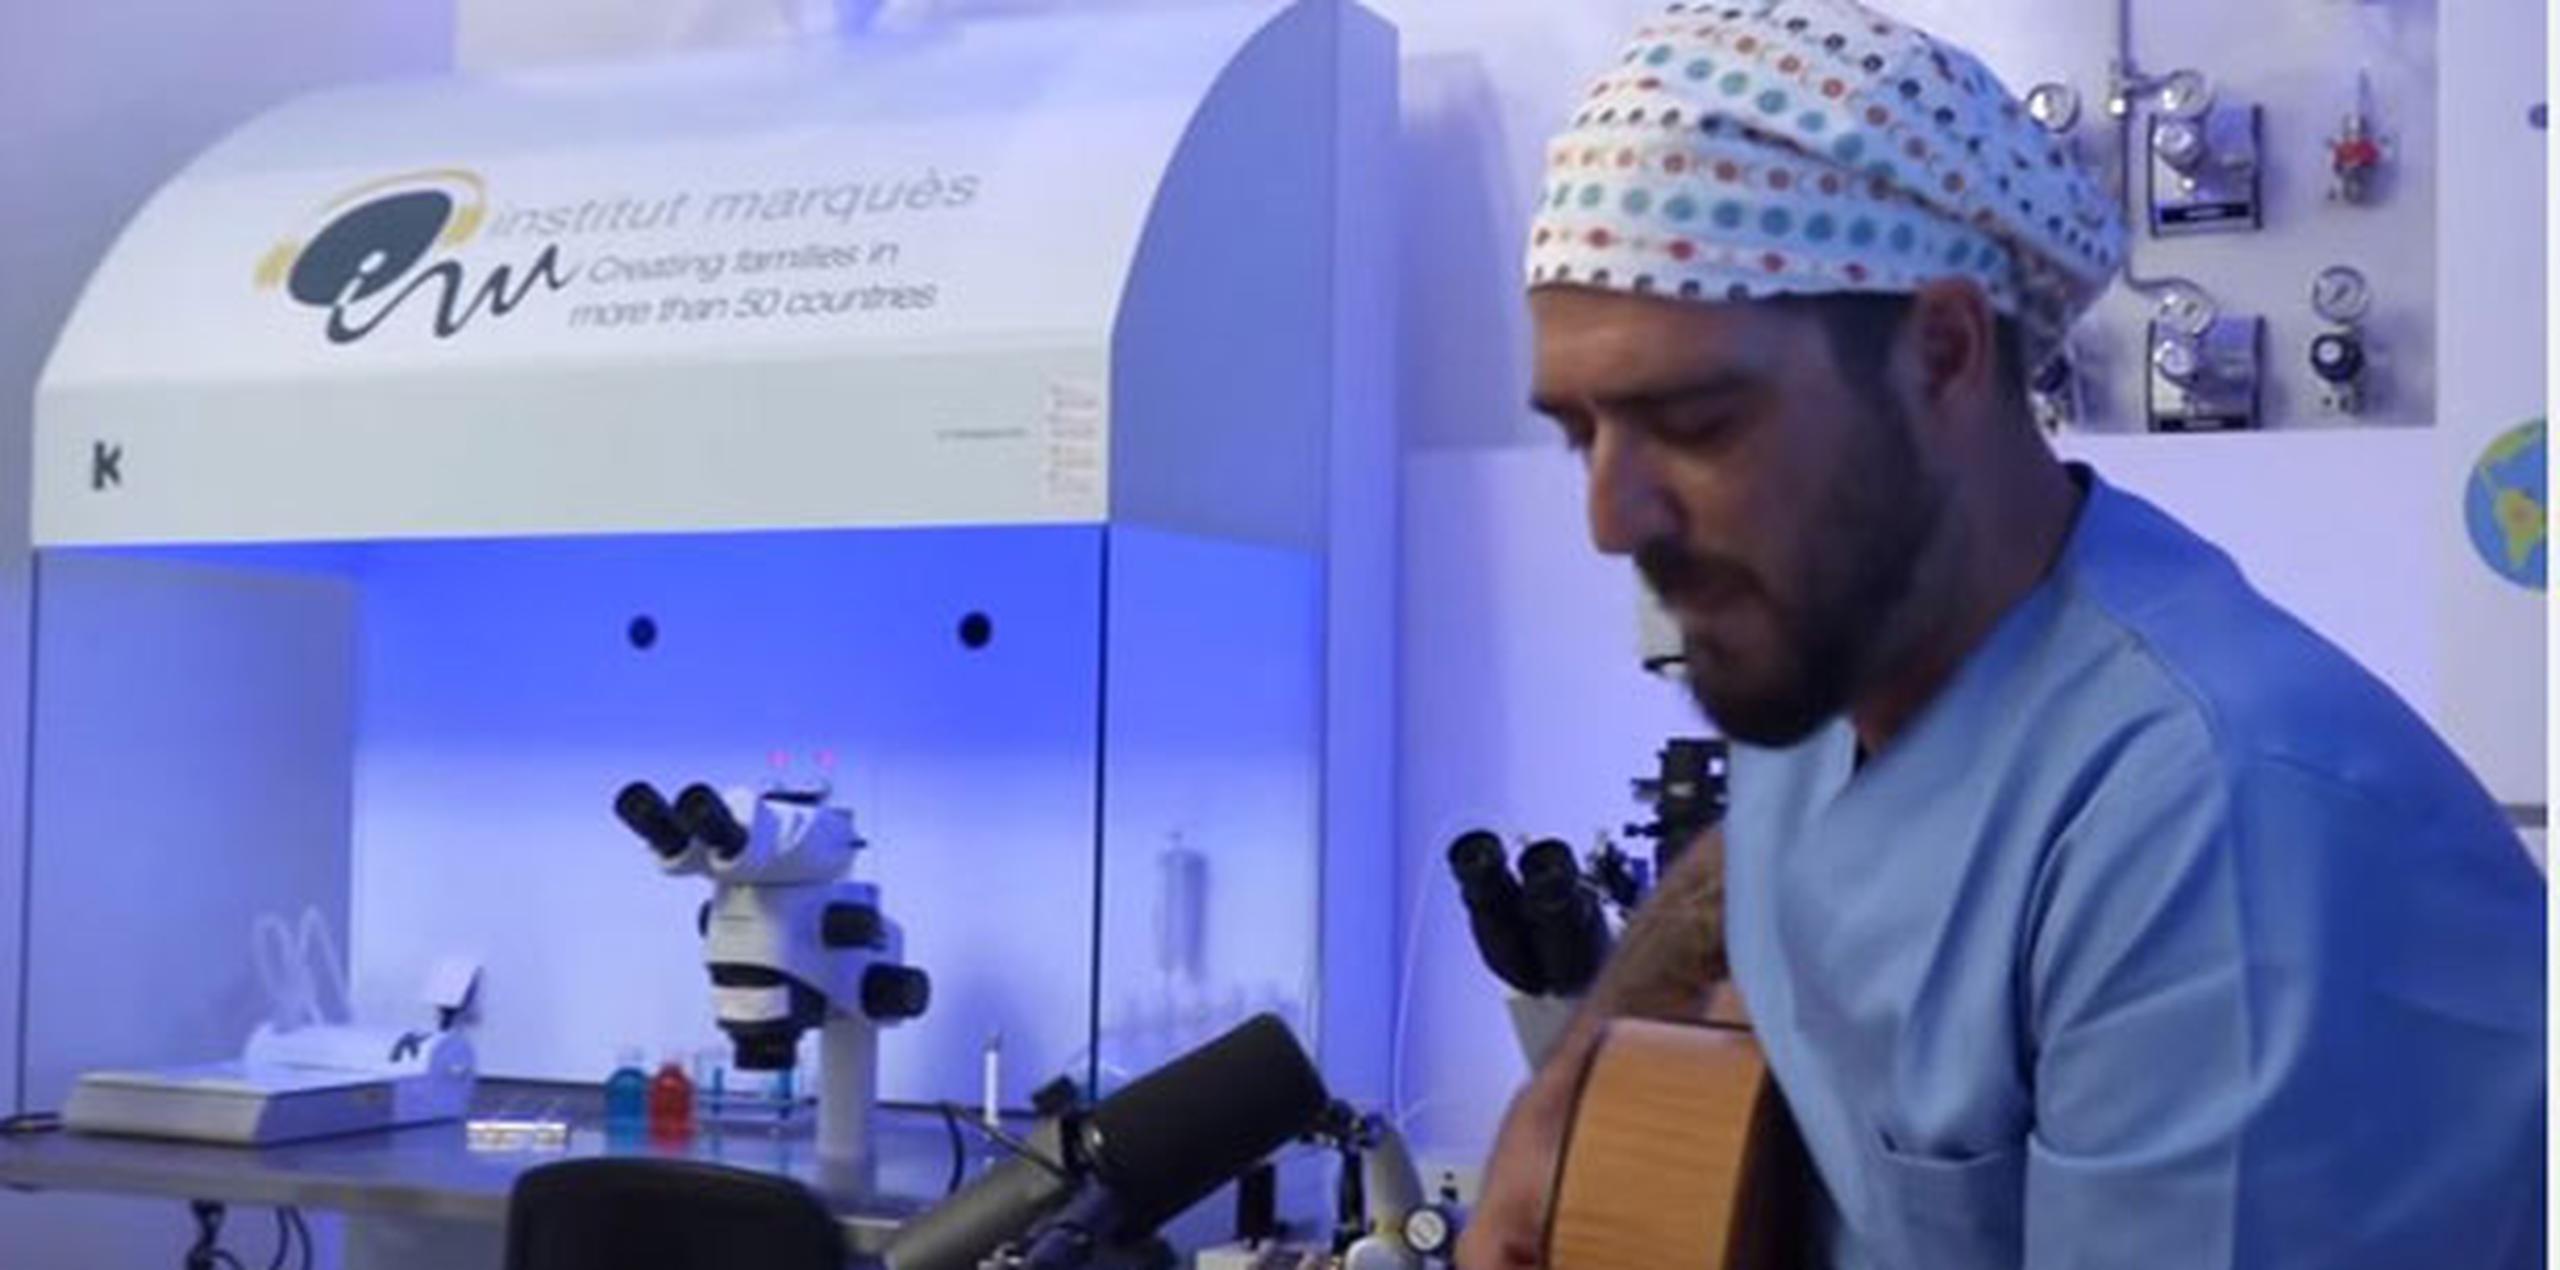 Con una guitarra, bata y gorro de médico, Orozco se prestó el lunes pasado a una investigación llevada a cabo por ese centro sanitario sobre cómo la música beneficia el desarrollo embrionario y fetal. (Instituto Marqués)